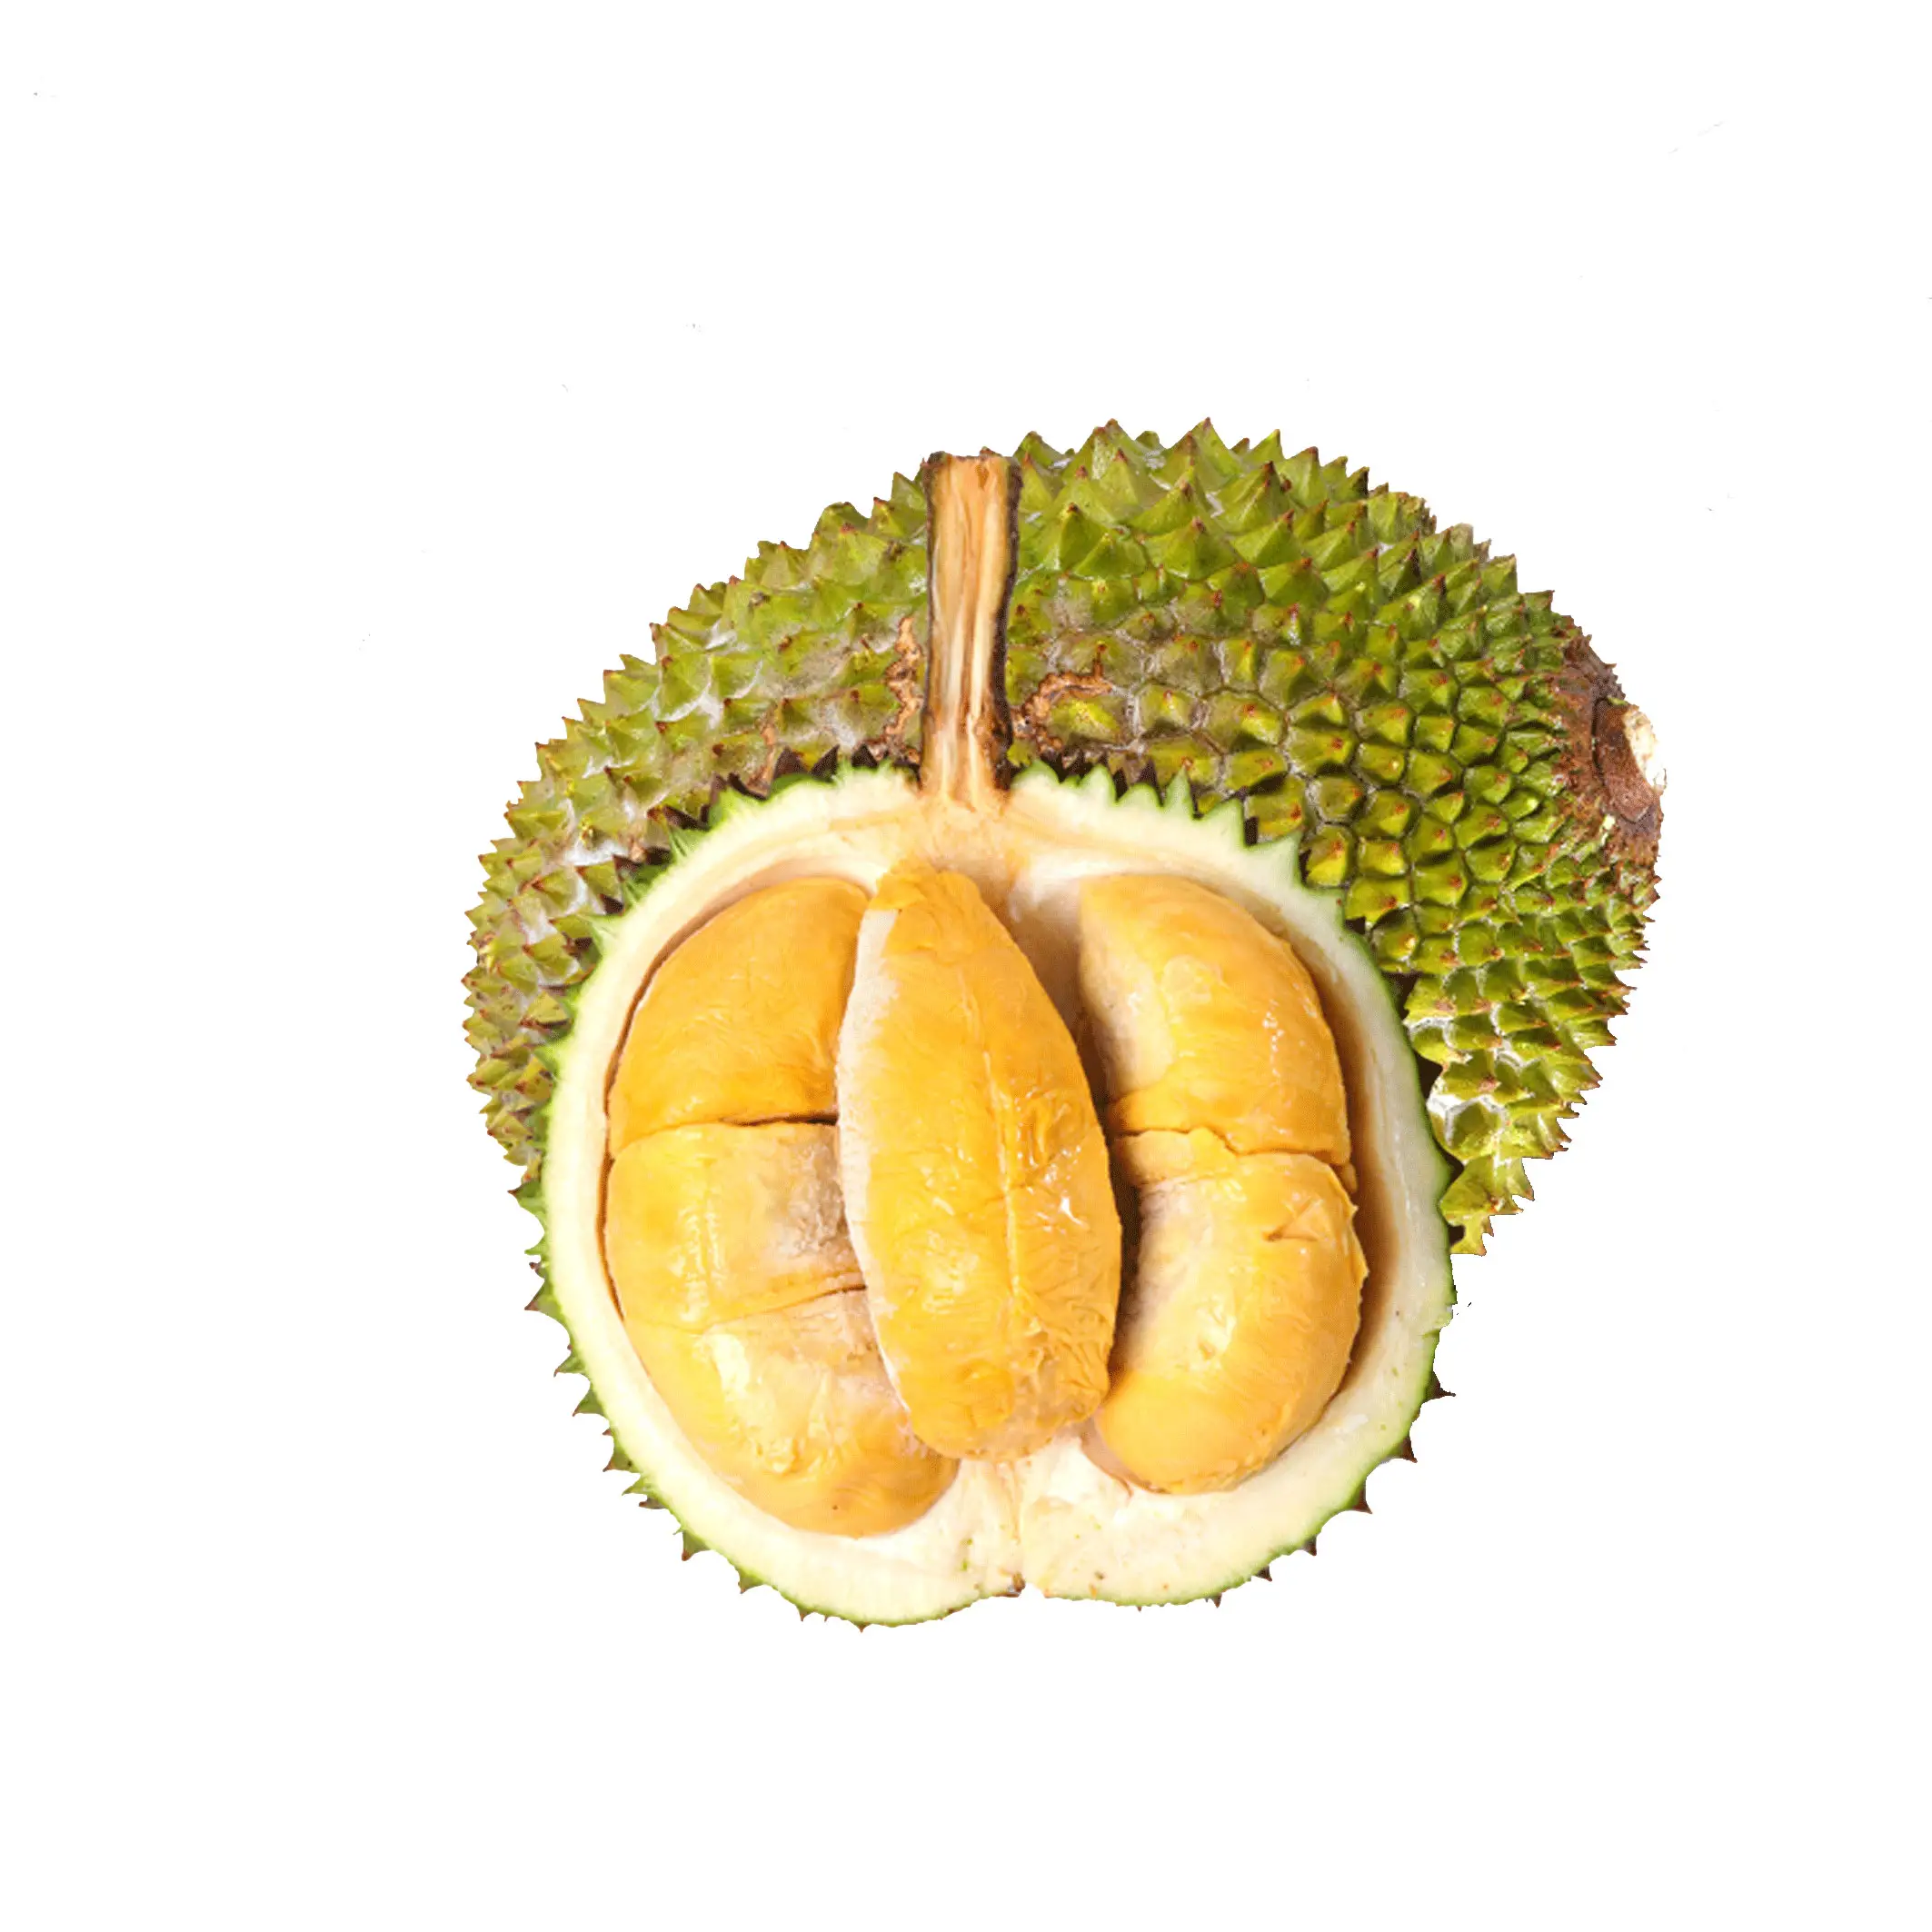 Produk Top buah Durian segar kualitas tinggi ekspor Harga Bersaing buah jual panas Durian untuk dijual